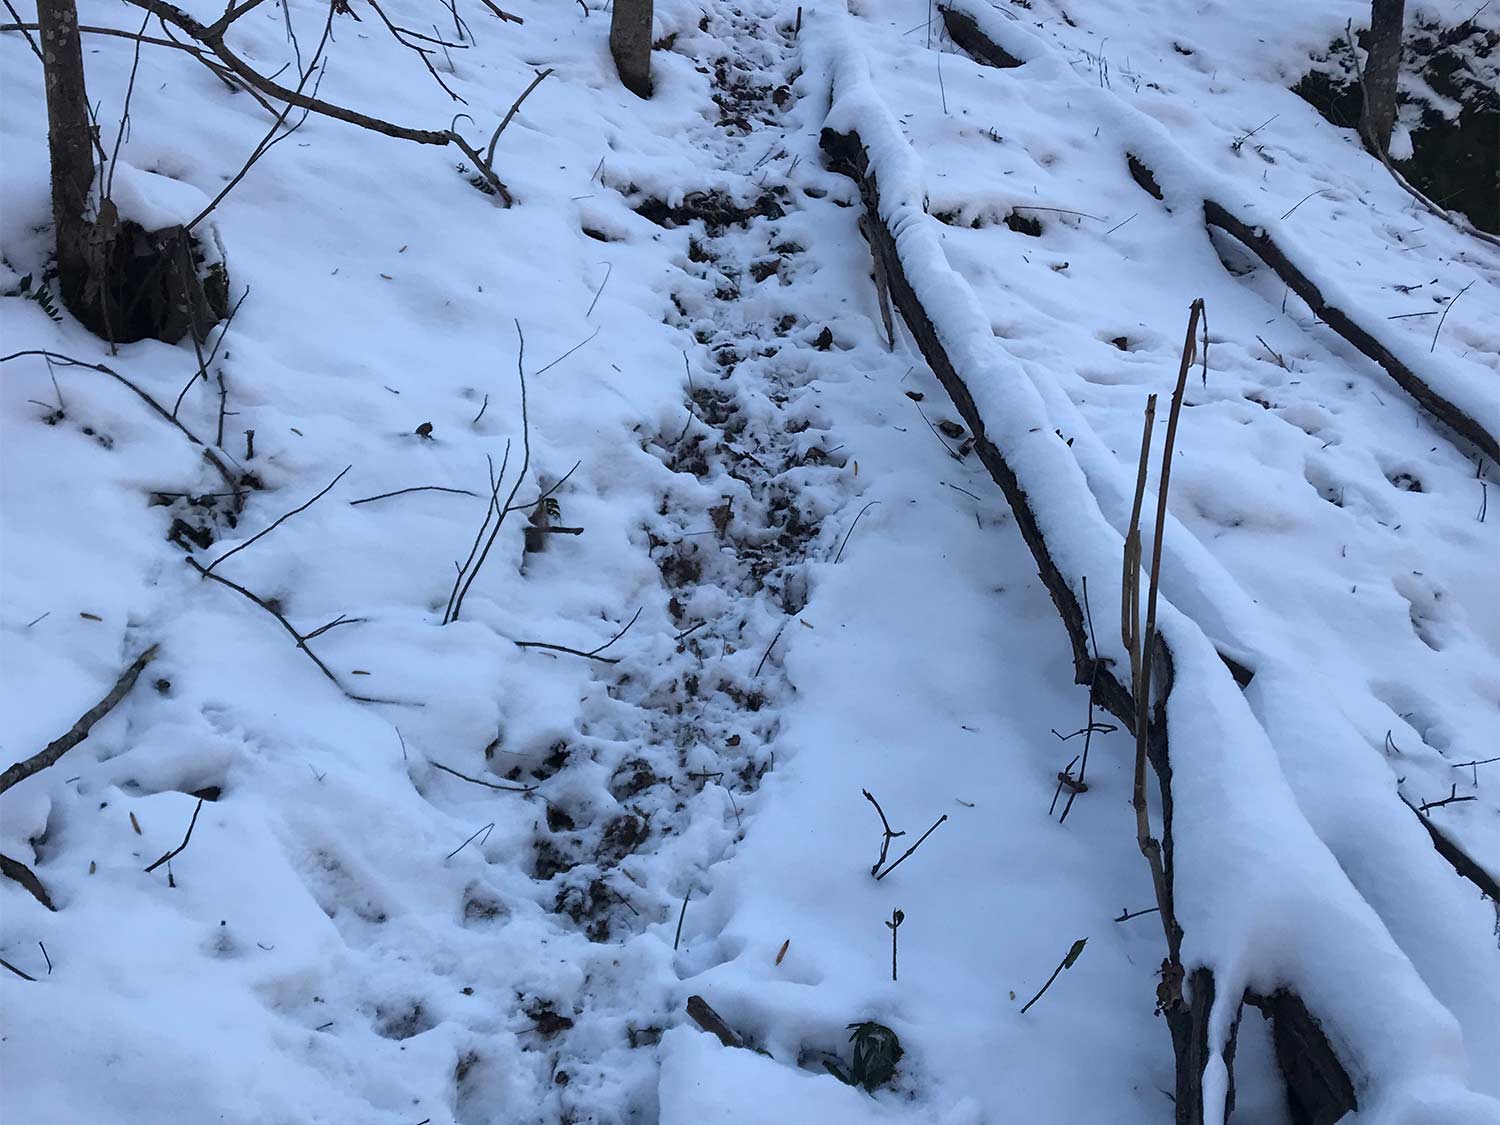 deer tracks in the snow